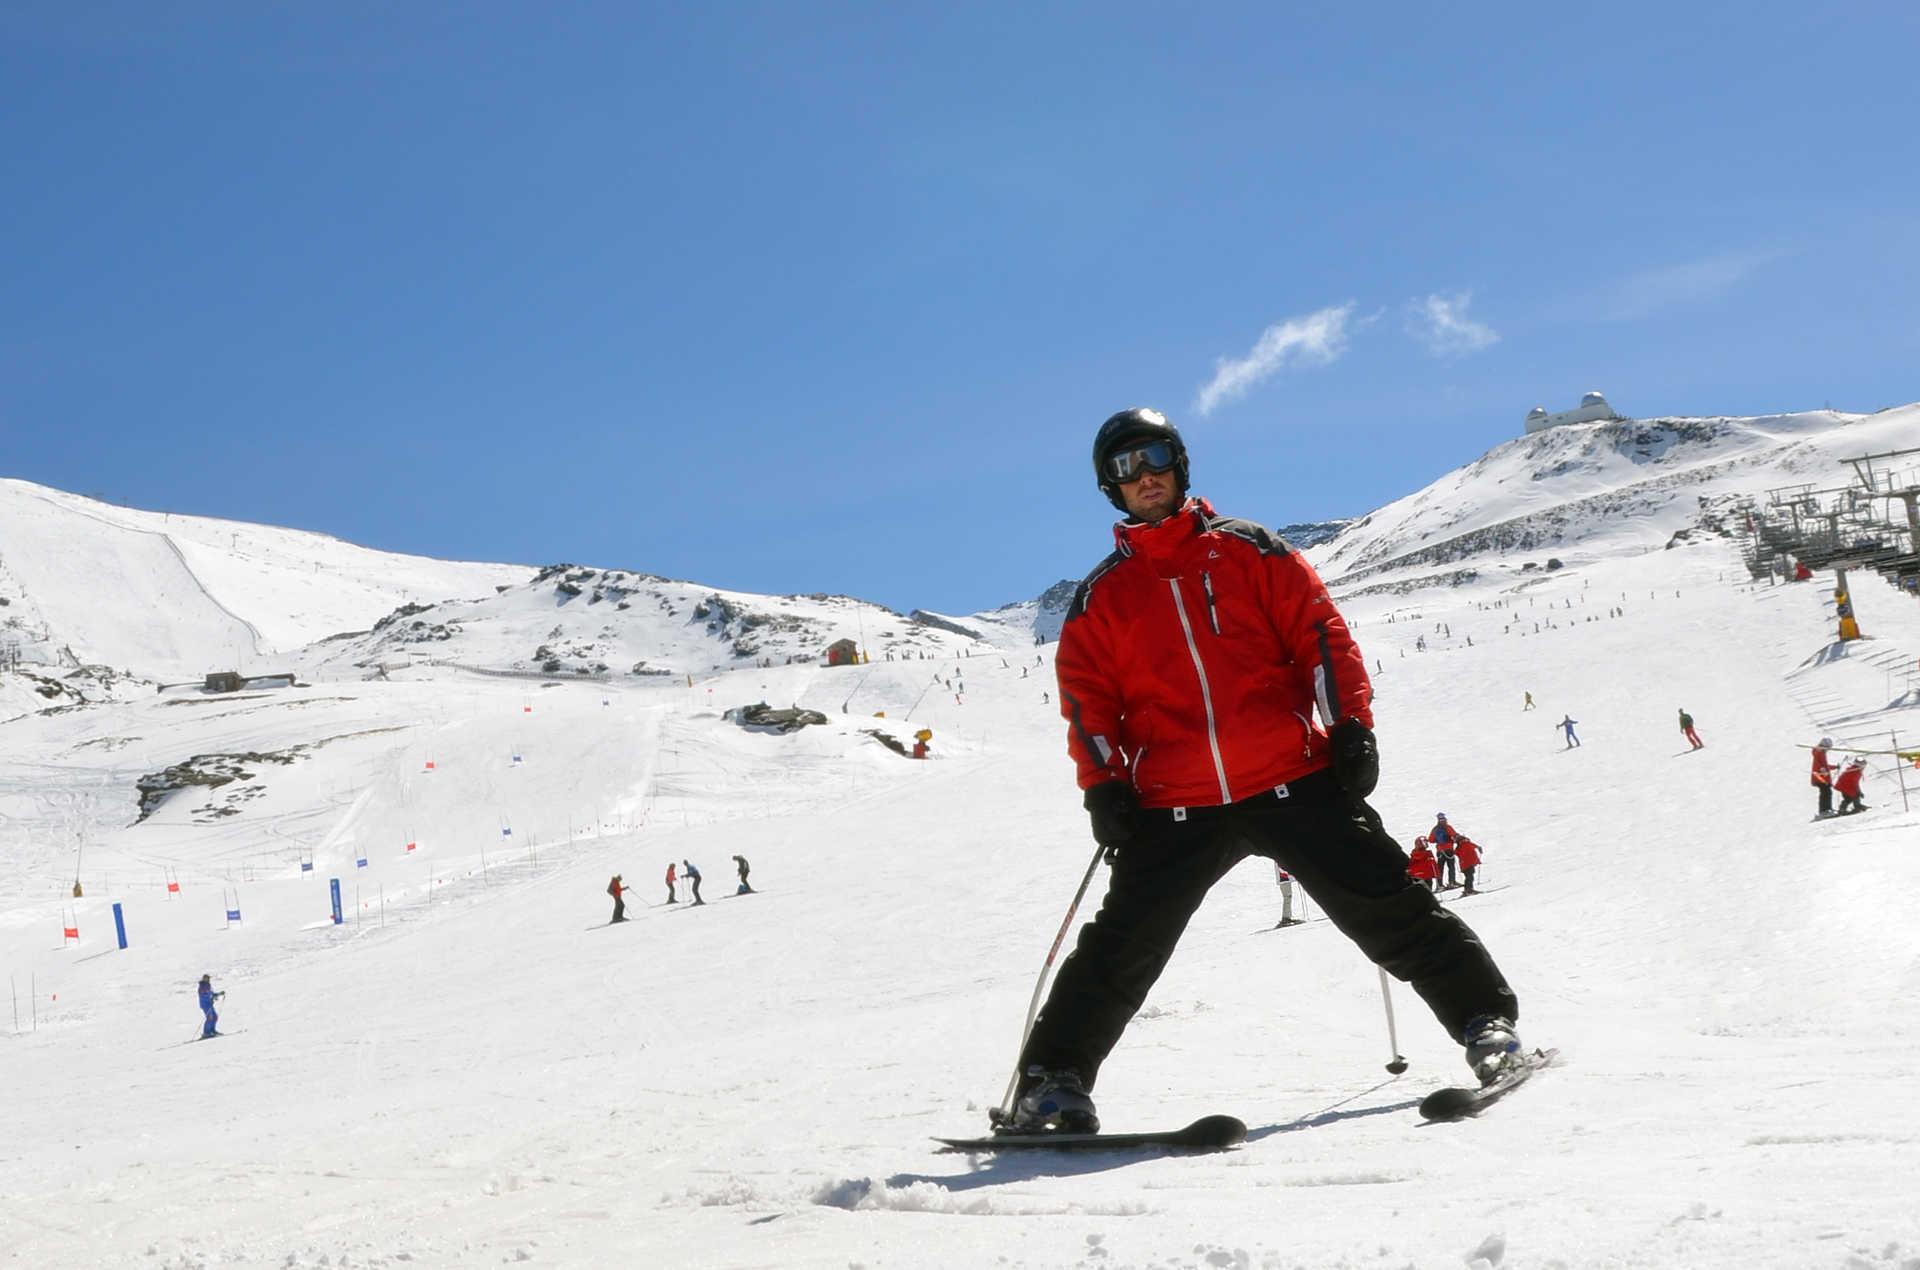 Turismo Activo y deporte Practicando esquí en Sierra Nevada.jpg 